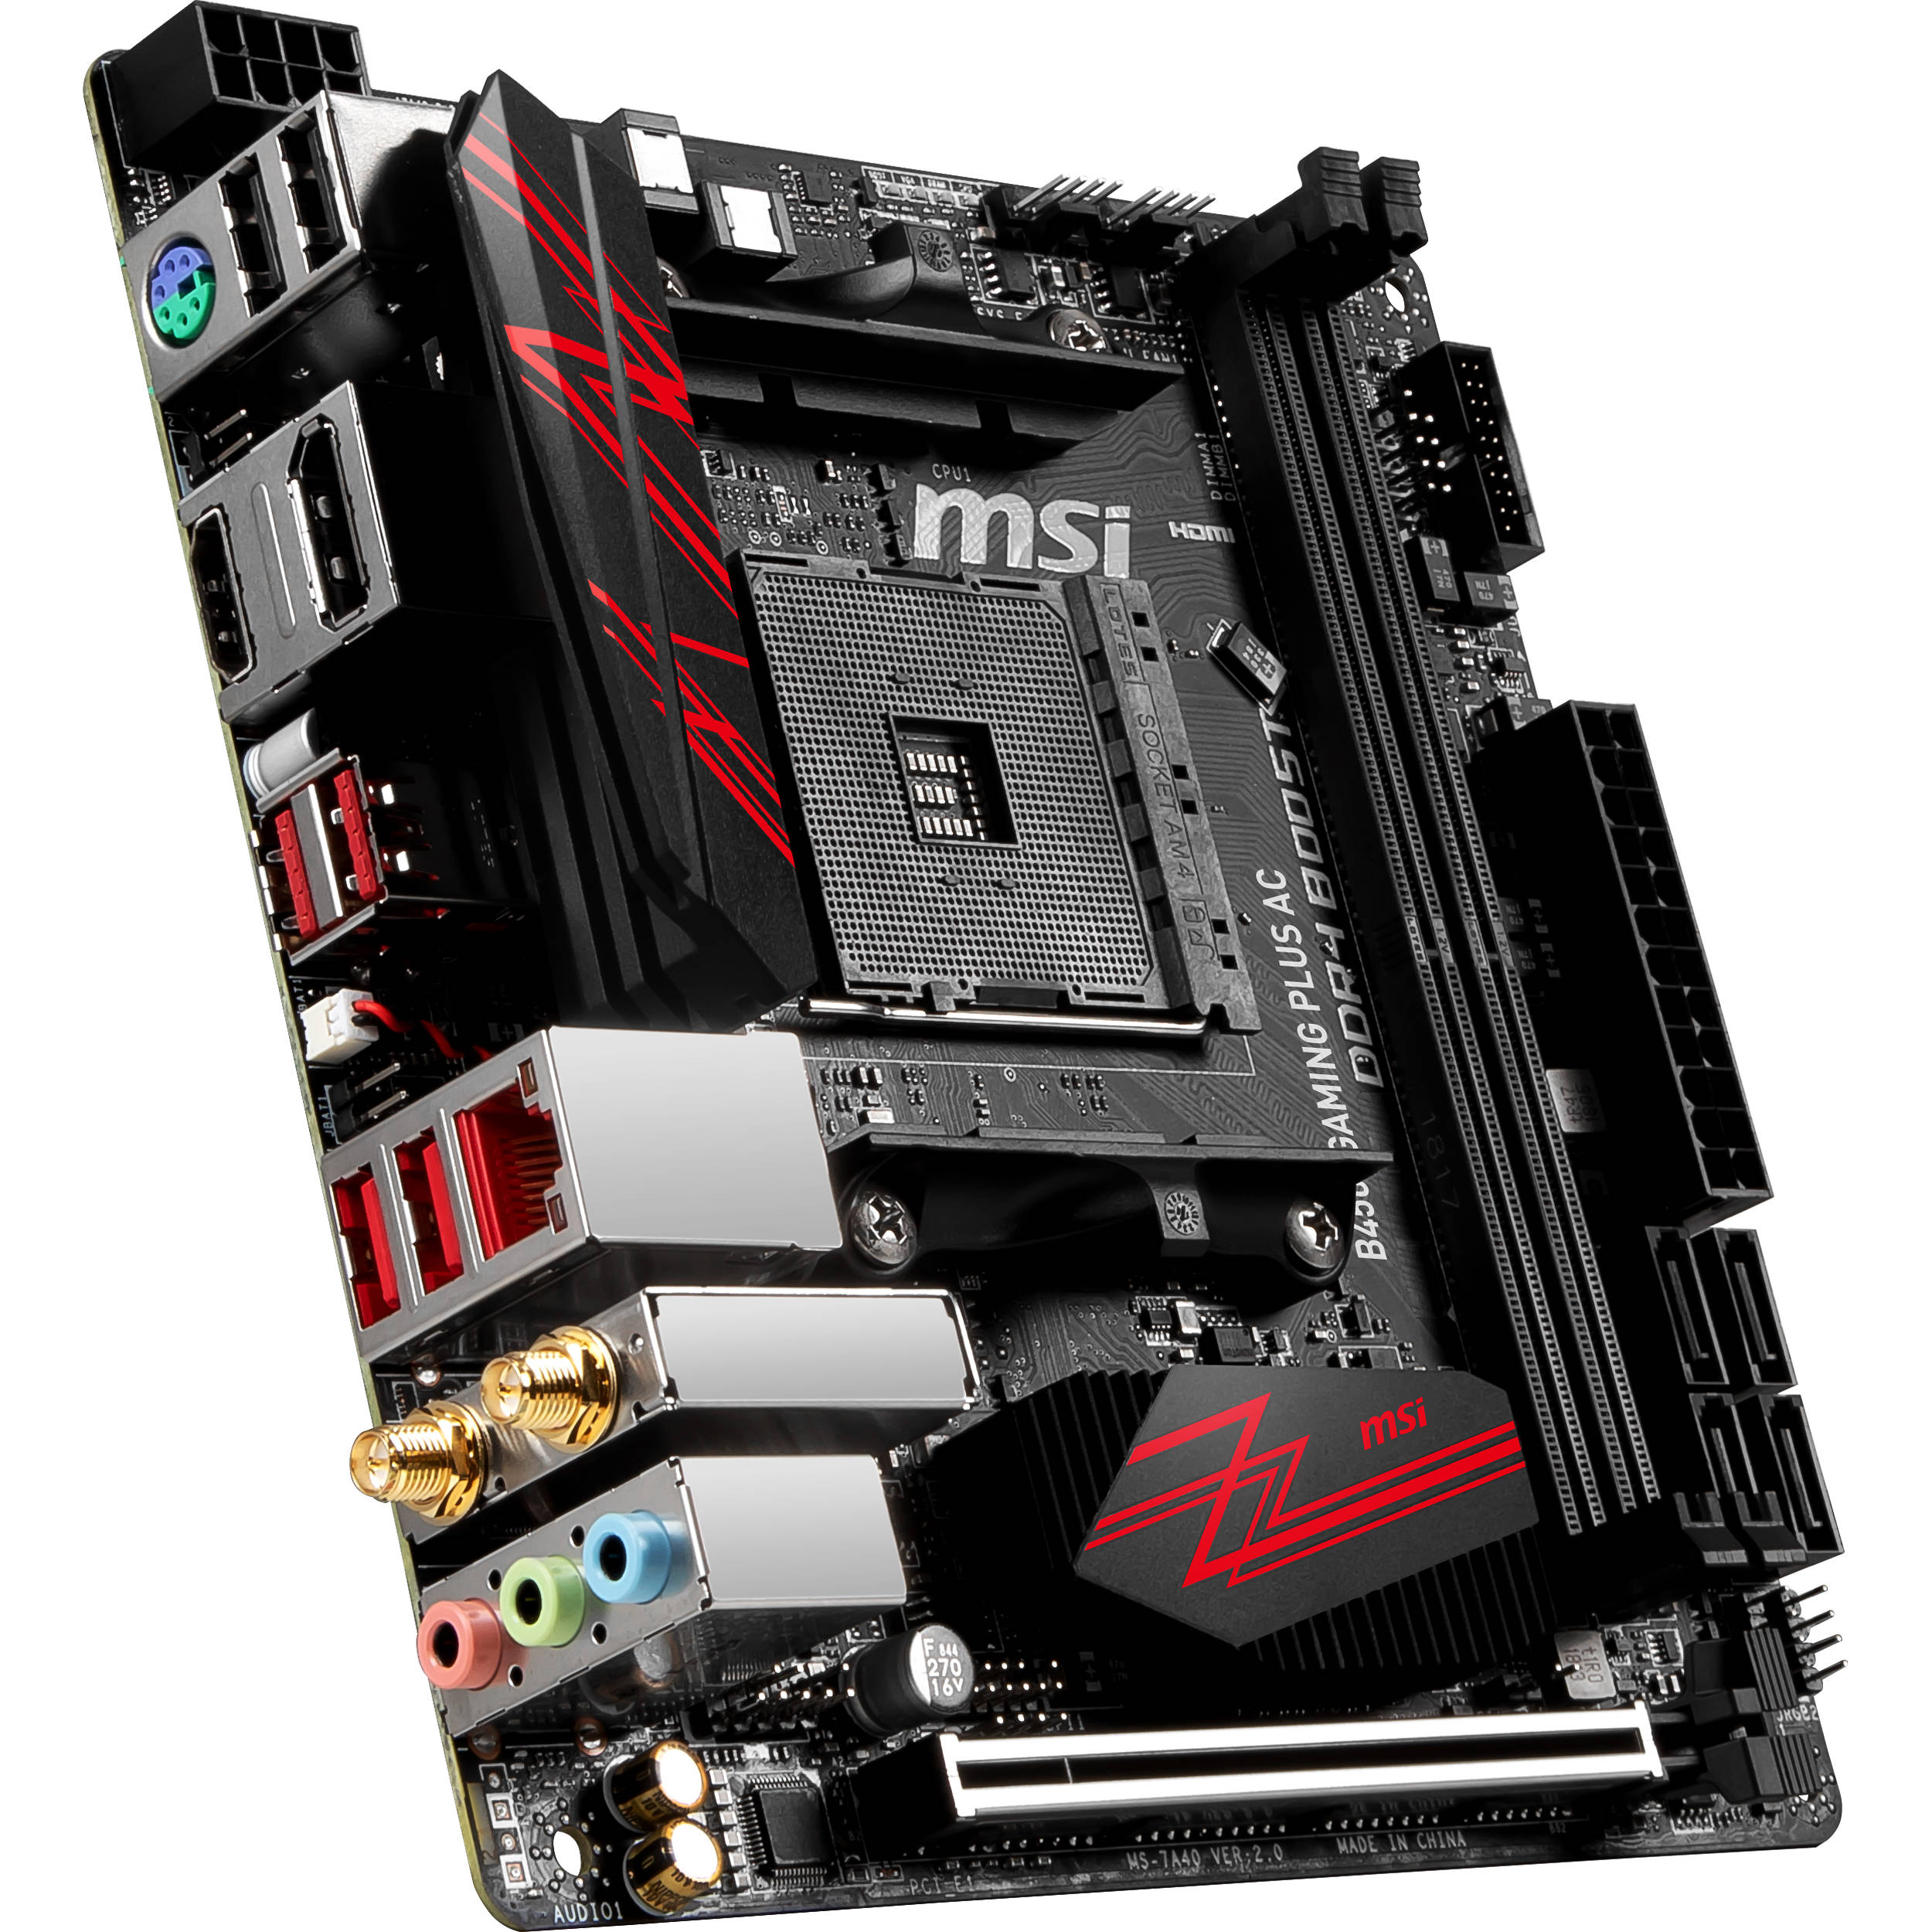 Msi m450 1tb. Материнской платы MSI b450. MSI материнская плата am4 b450. Mini ATX MSI b450. MSI b450 Mini ITX.